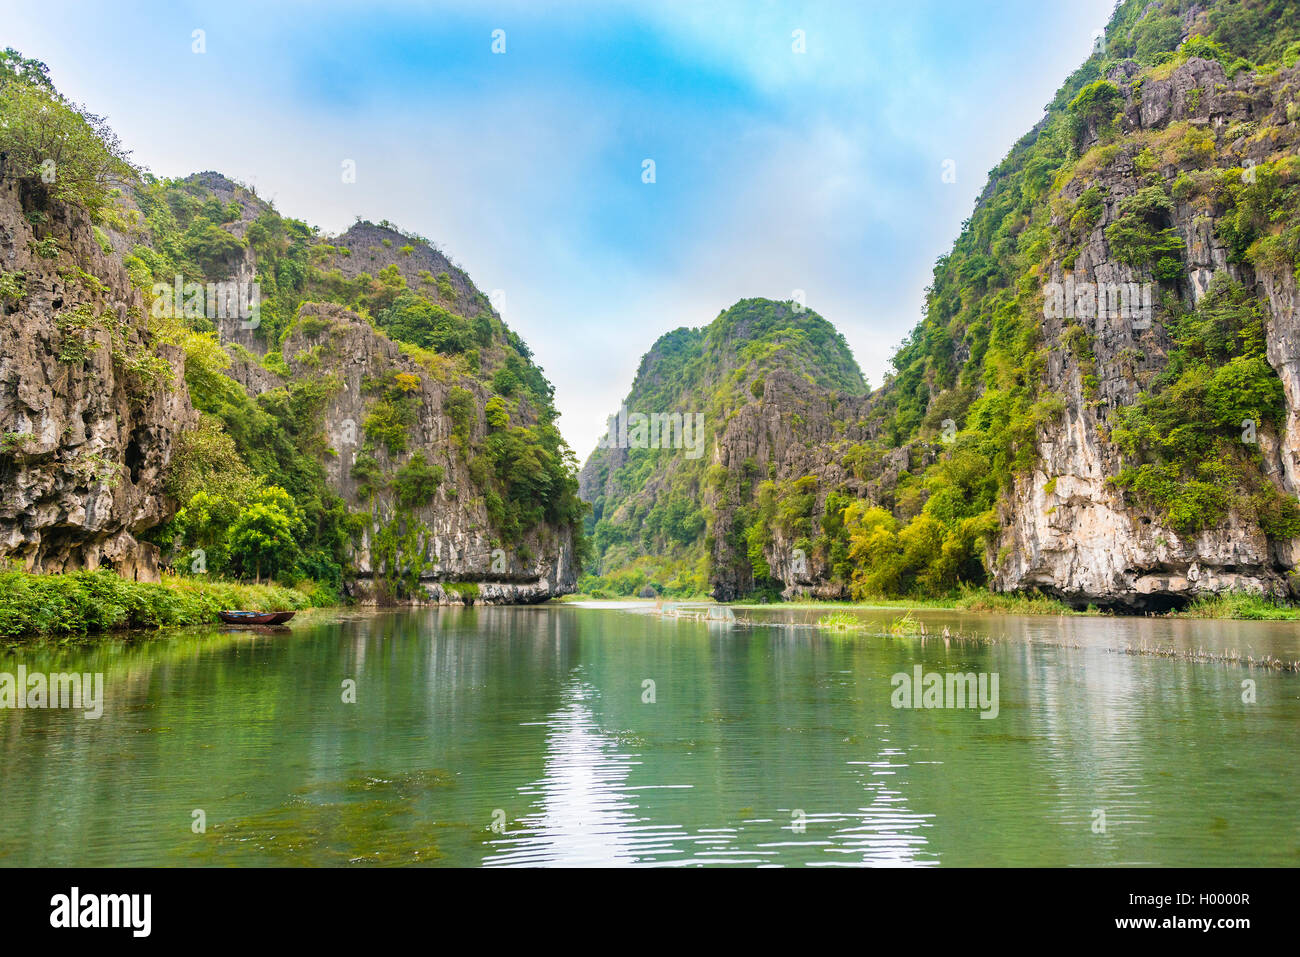 Las rocas calcáreas, boscosas montañas karst, paisaje de río, ONG Río Dong, Canción Ngô Dong Tam Coc, Ninh Binh, Vietnam Foto de stock